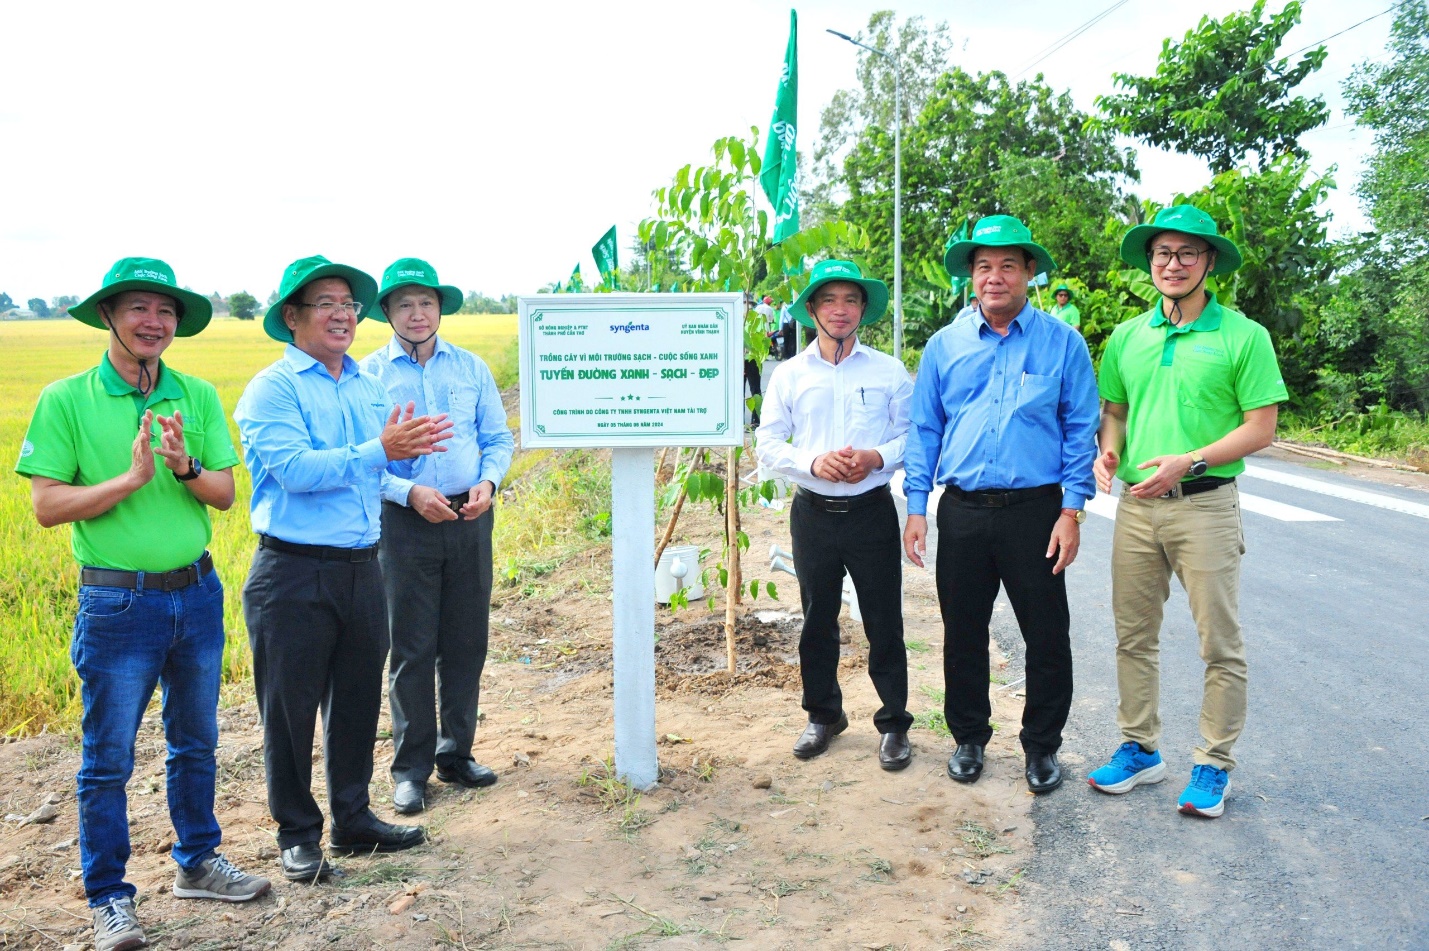 Ông Trần Thanh Vũ, Tổng giám đốc Syngenta Việt Nam (thứ 2 từ bên trái) tại Lễ phát động trồng cây và chương trình “Môi trường sạch – Cuộc sống xanh”